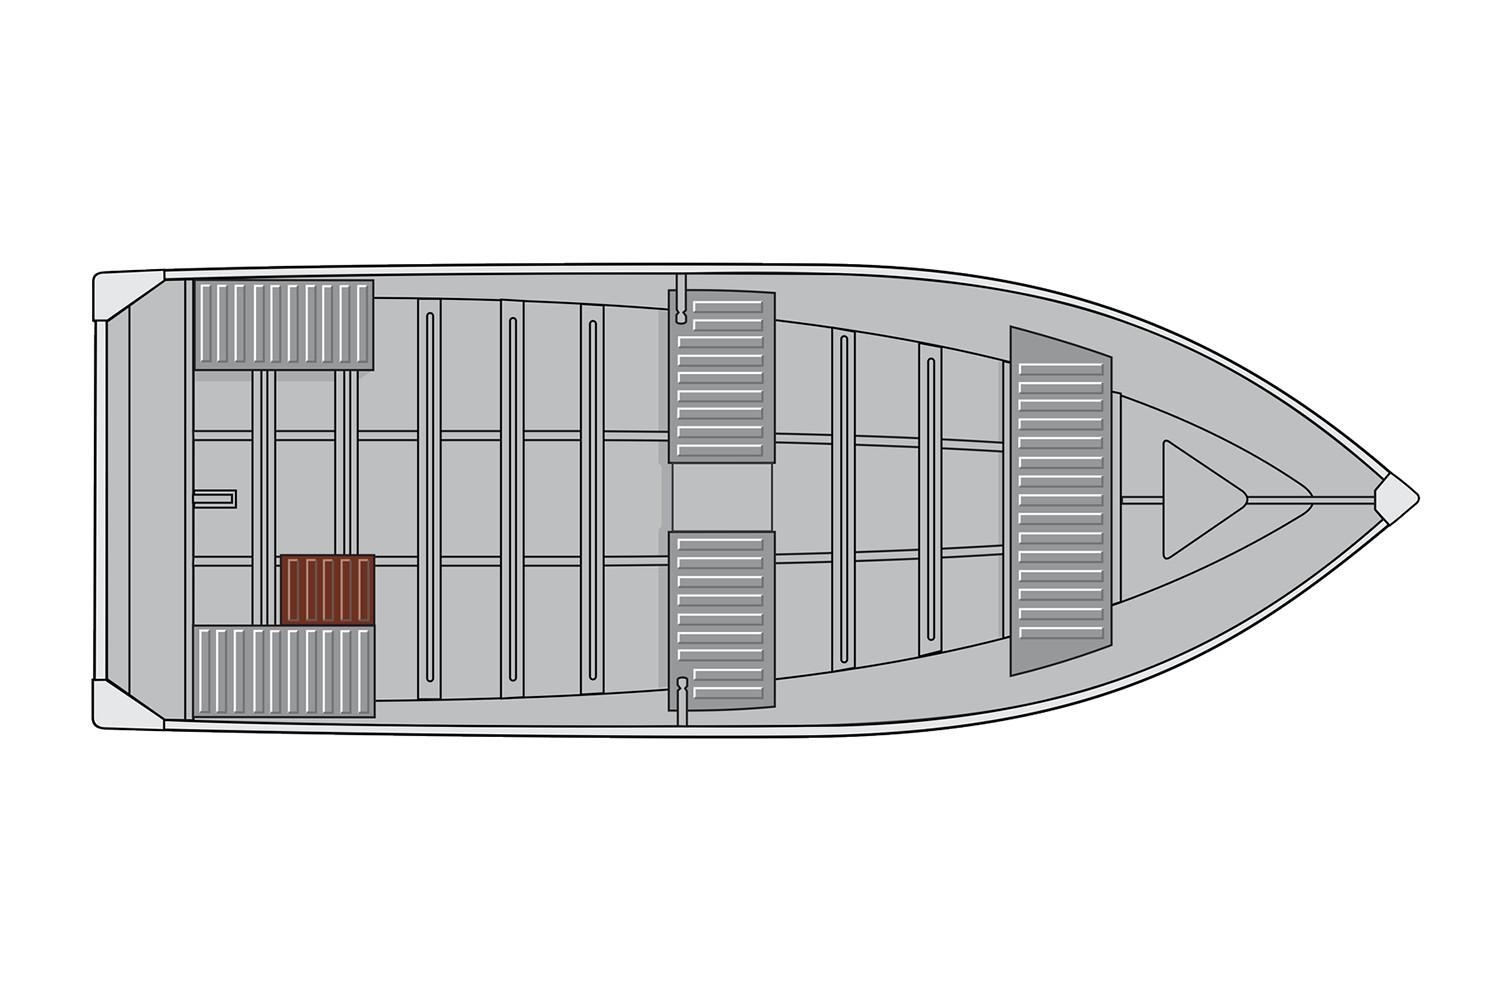 springbok boat logo